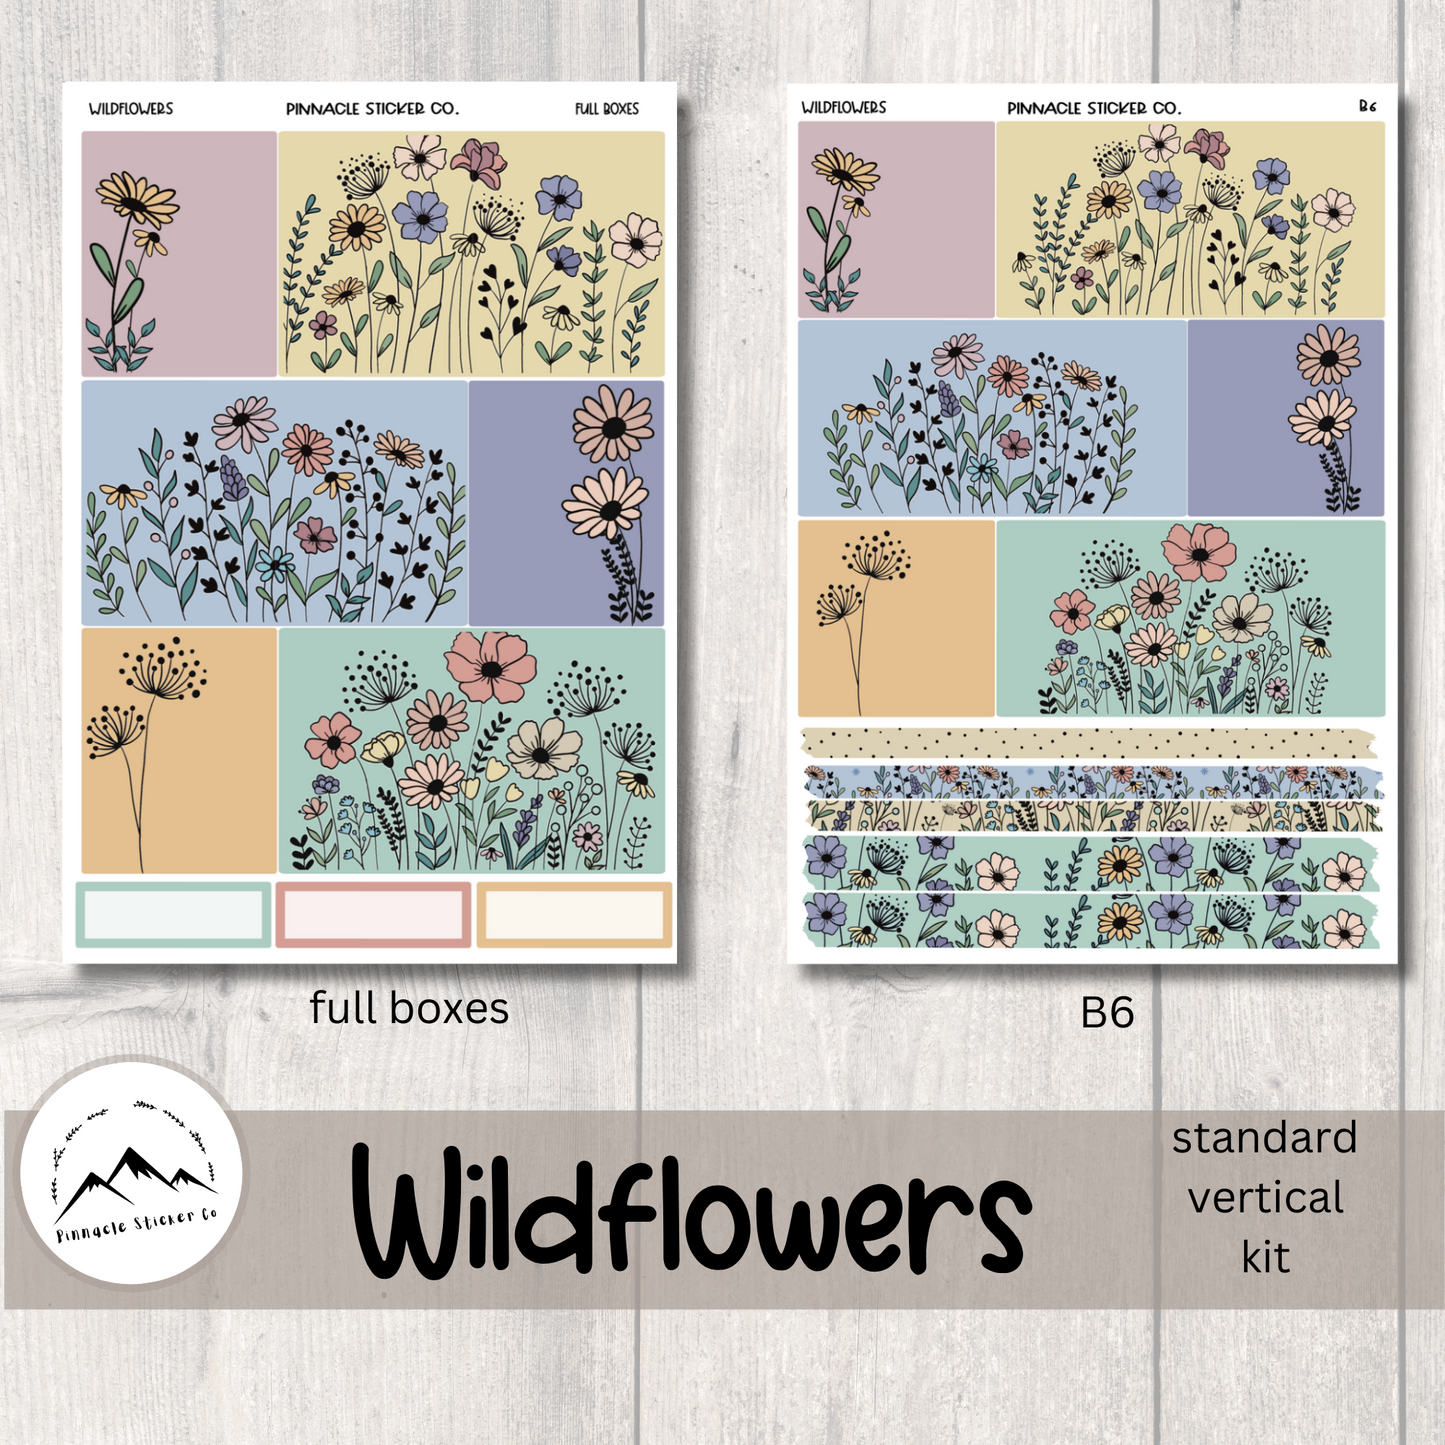 Wildflowers Weekly Kit Planner Stickers